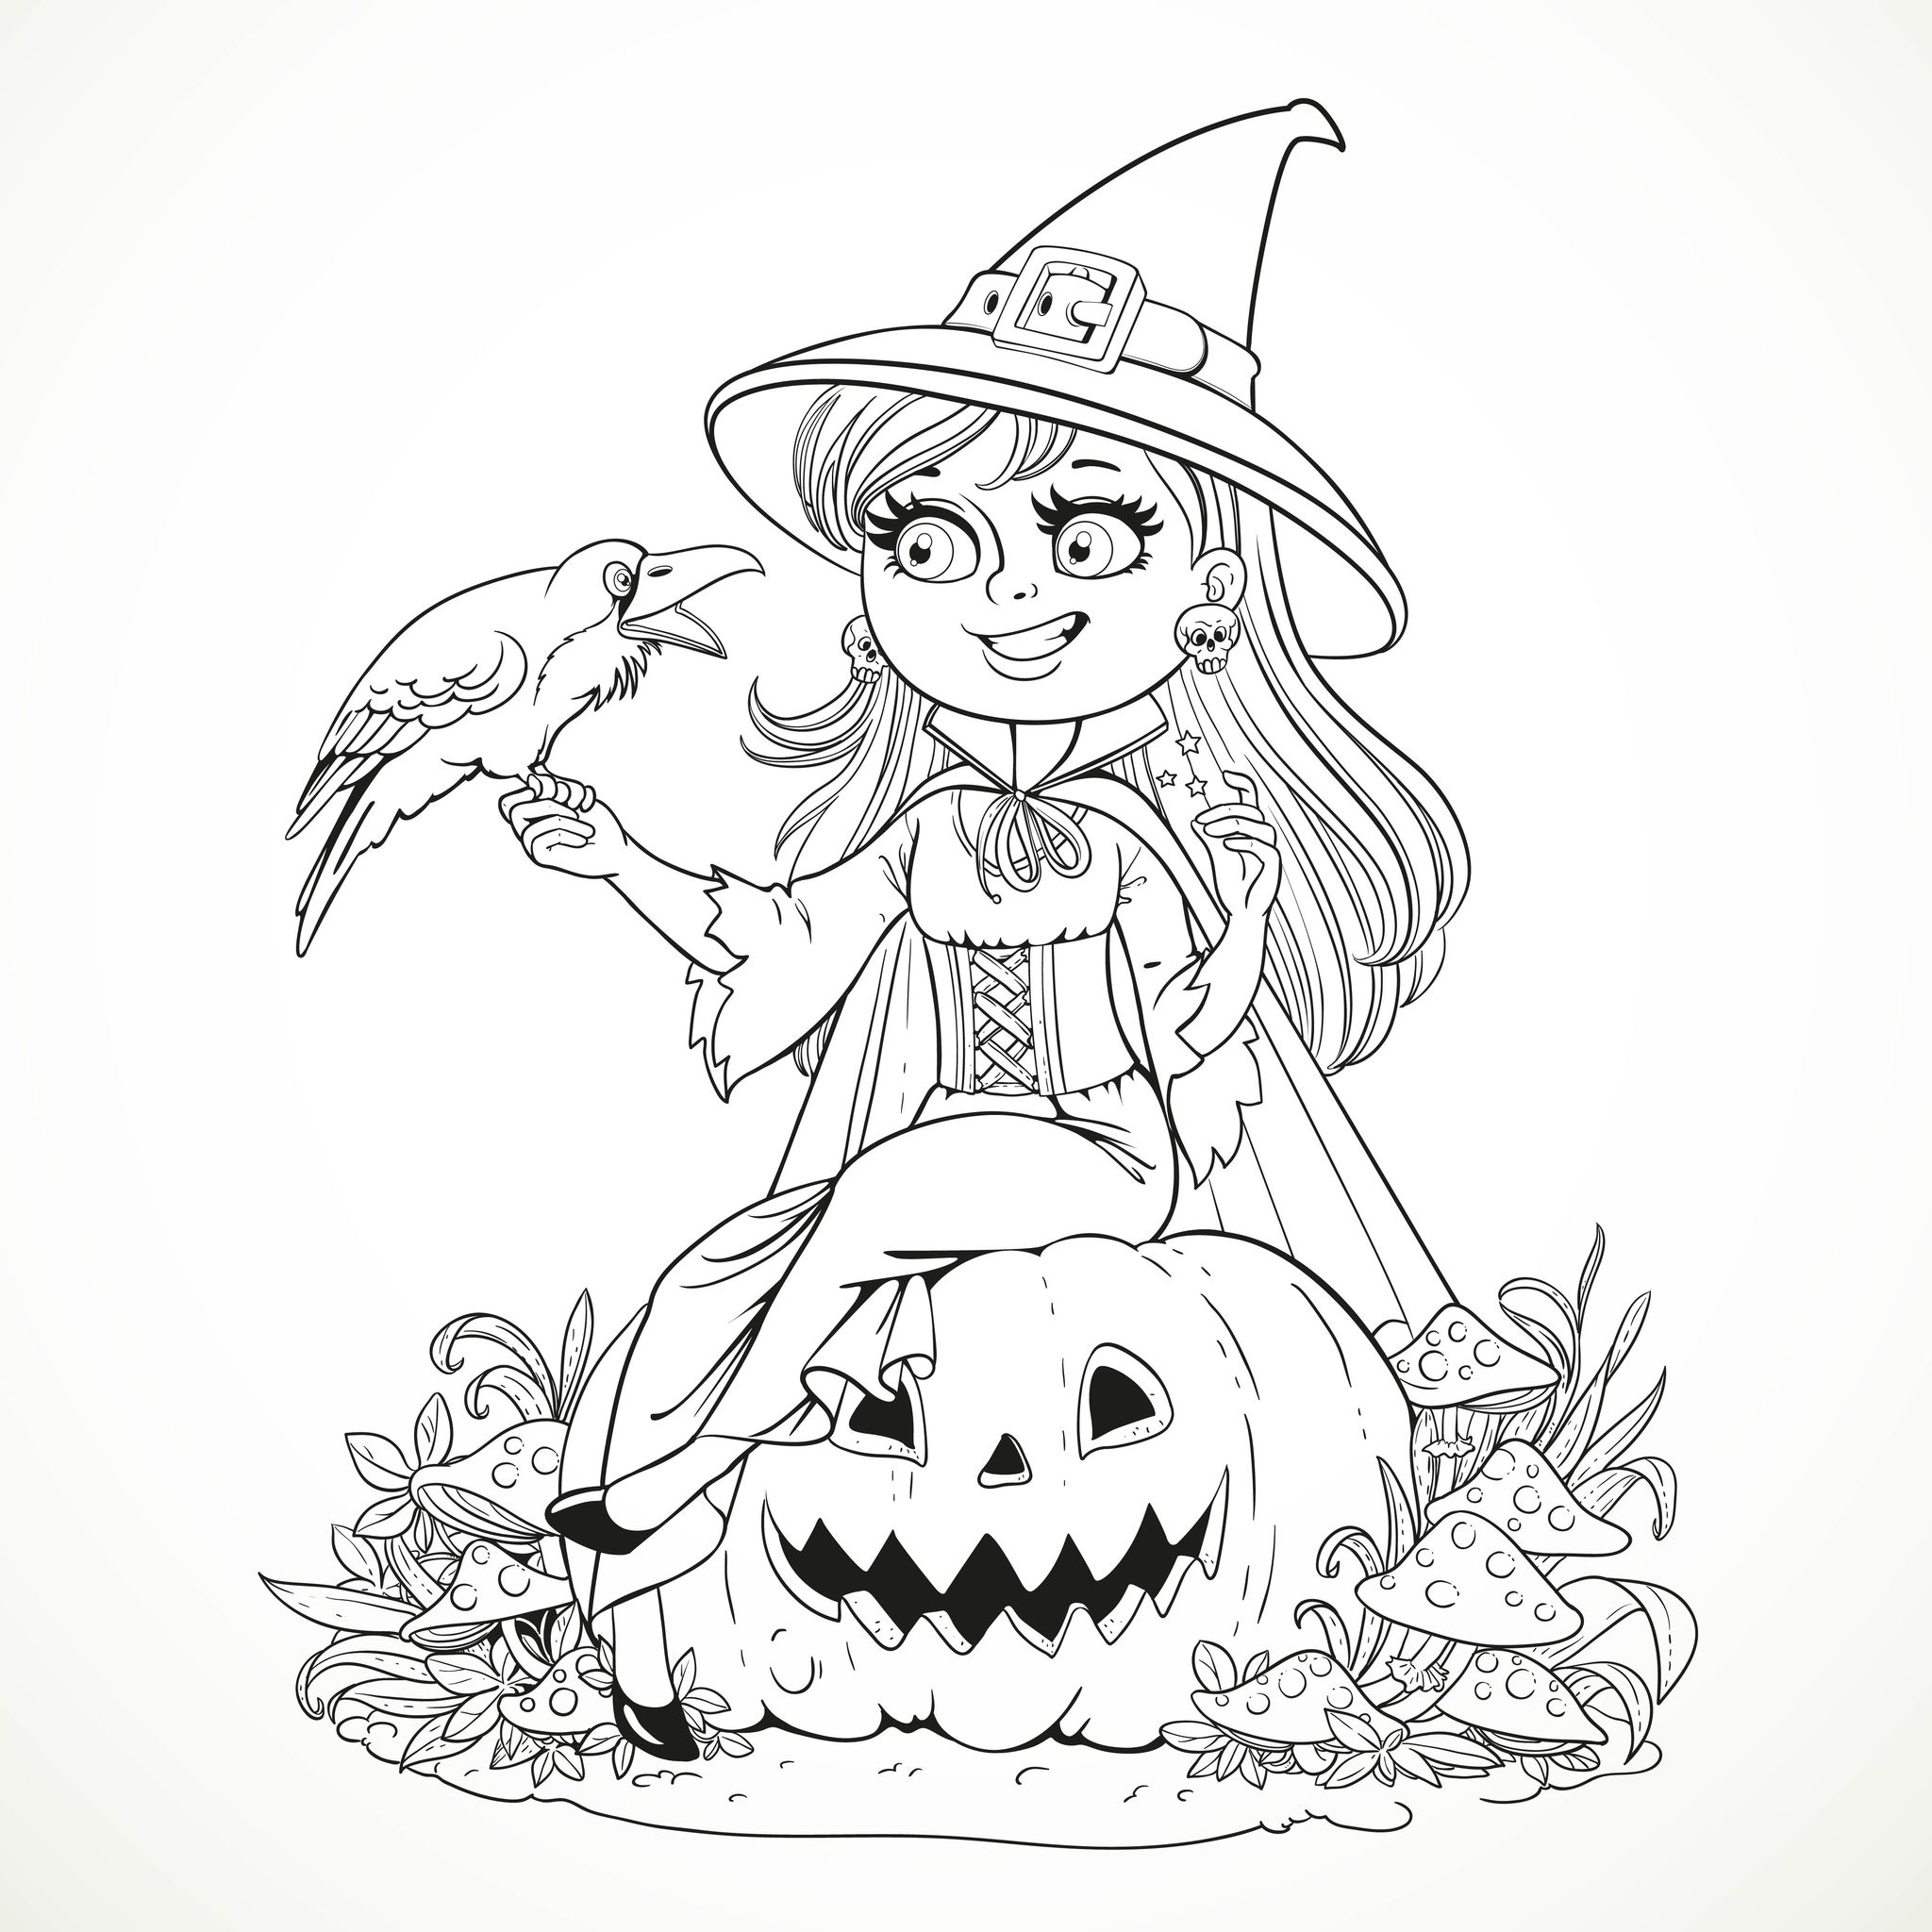 Desenho de Bruxa para colorir  Desenhos para colorir e imprimir gratis